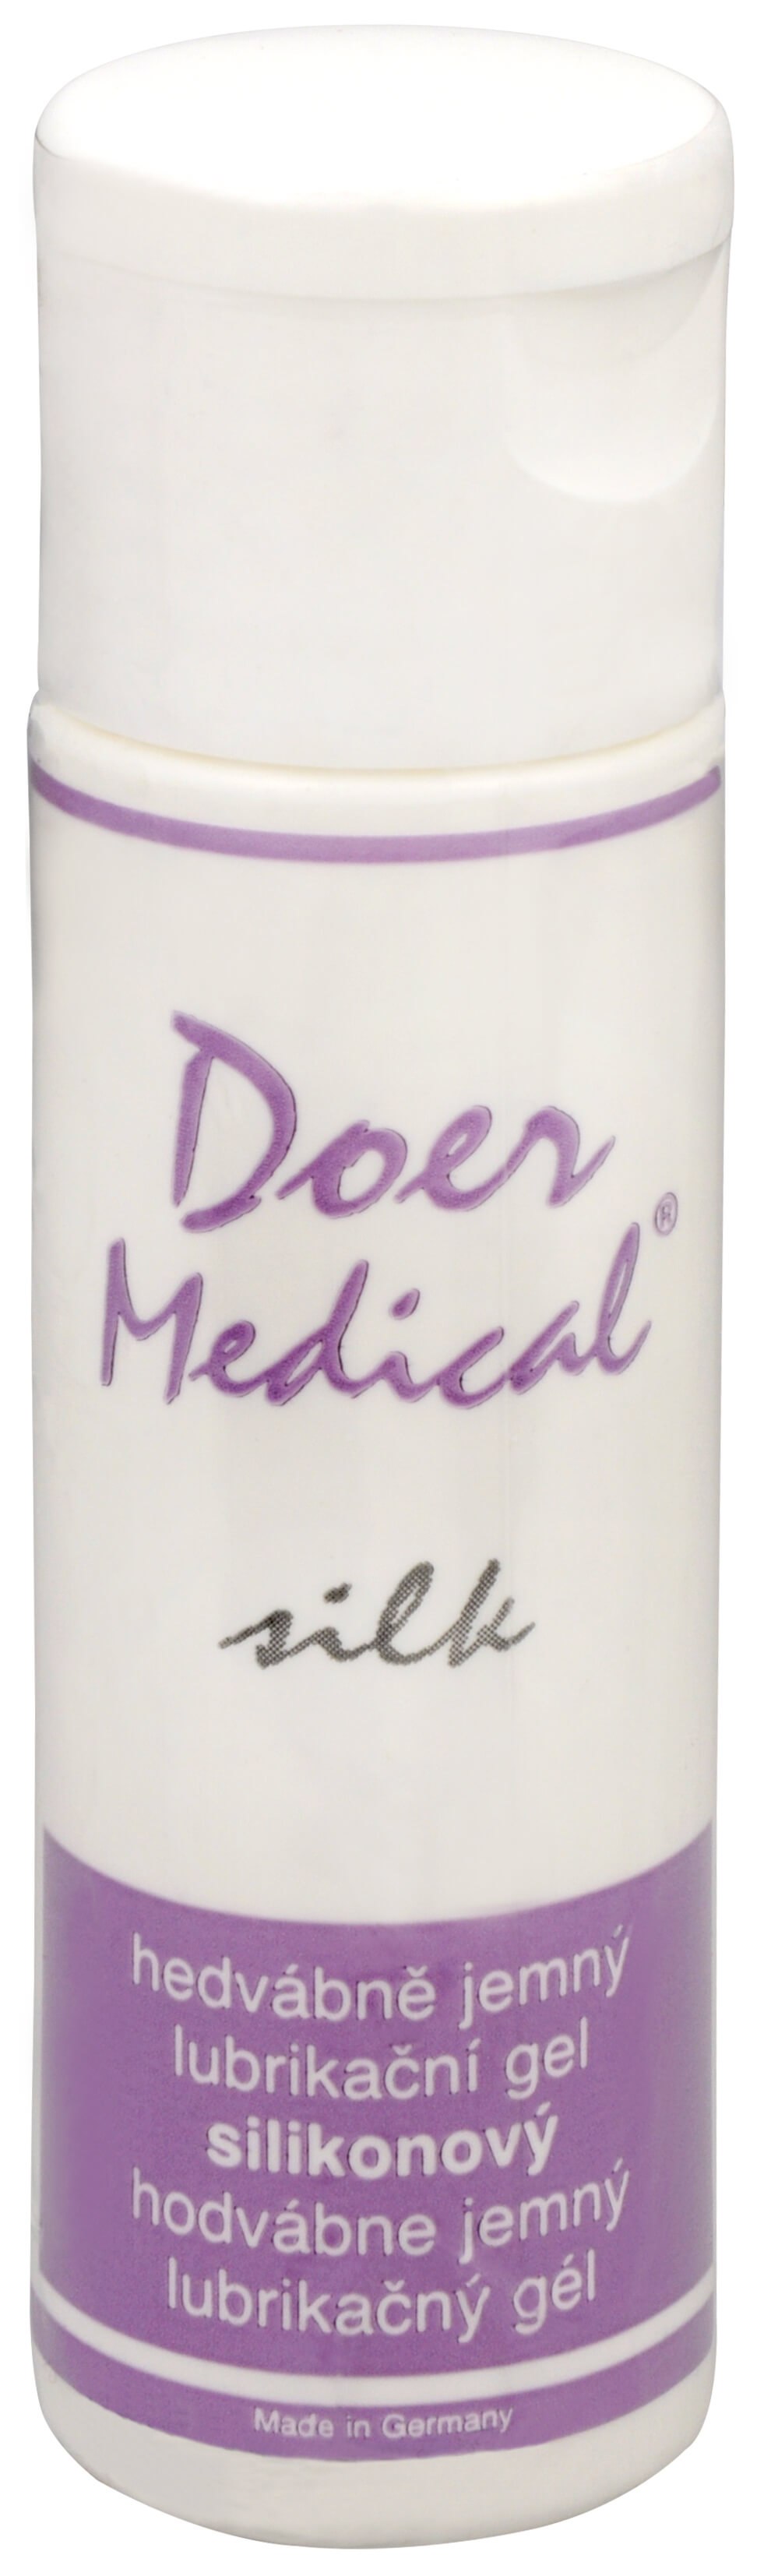 Zobrazit detail výrobku Doer Medical® Doer Medical Silk 30 ml